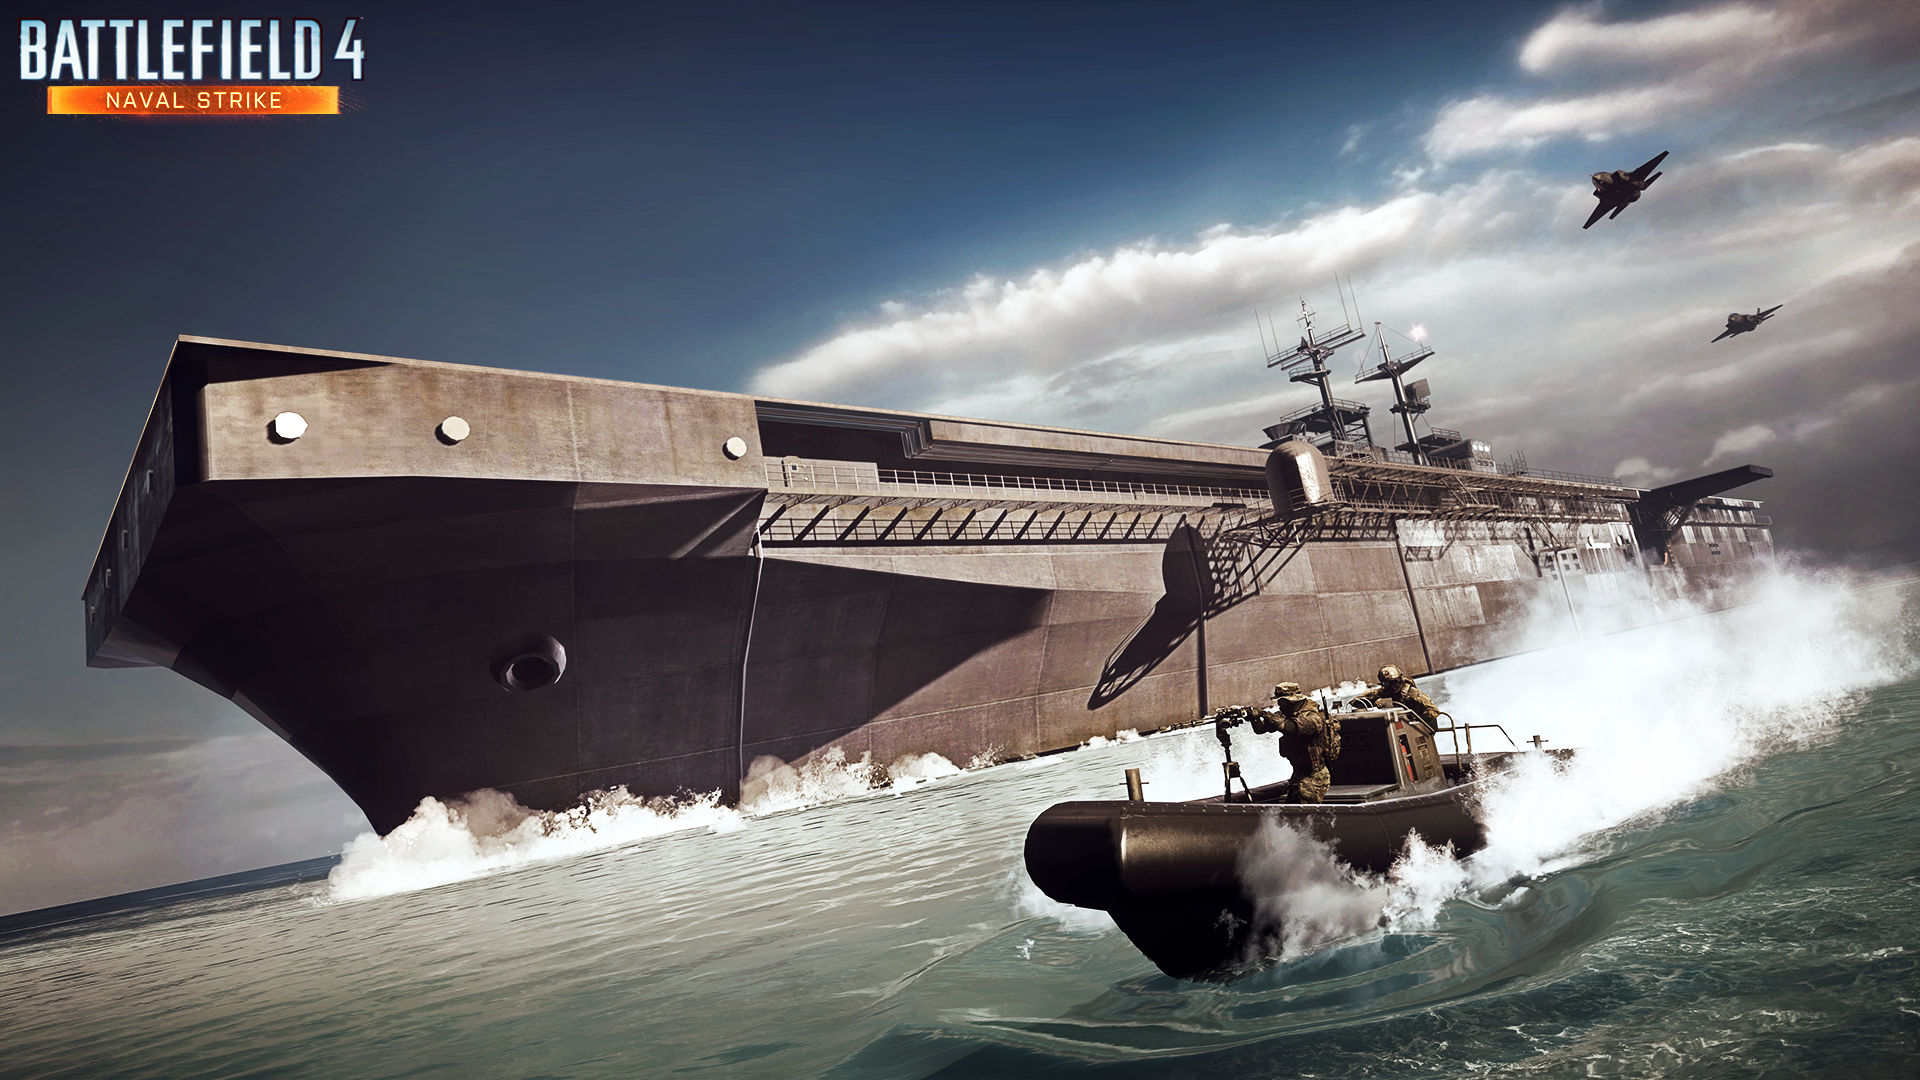 Naval Strike, DLC de Battlefield 4, tiene nuevas imágenes 12910808384_36d9631ecc_o